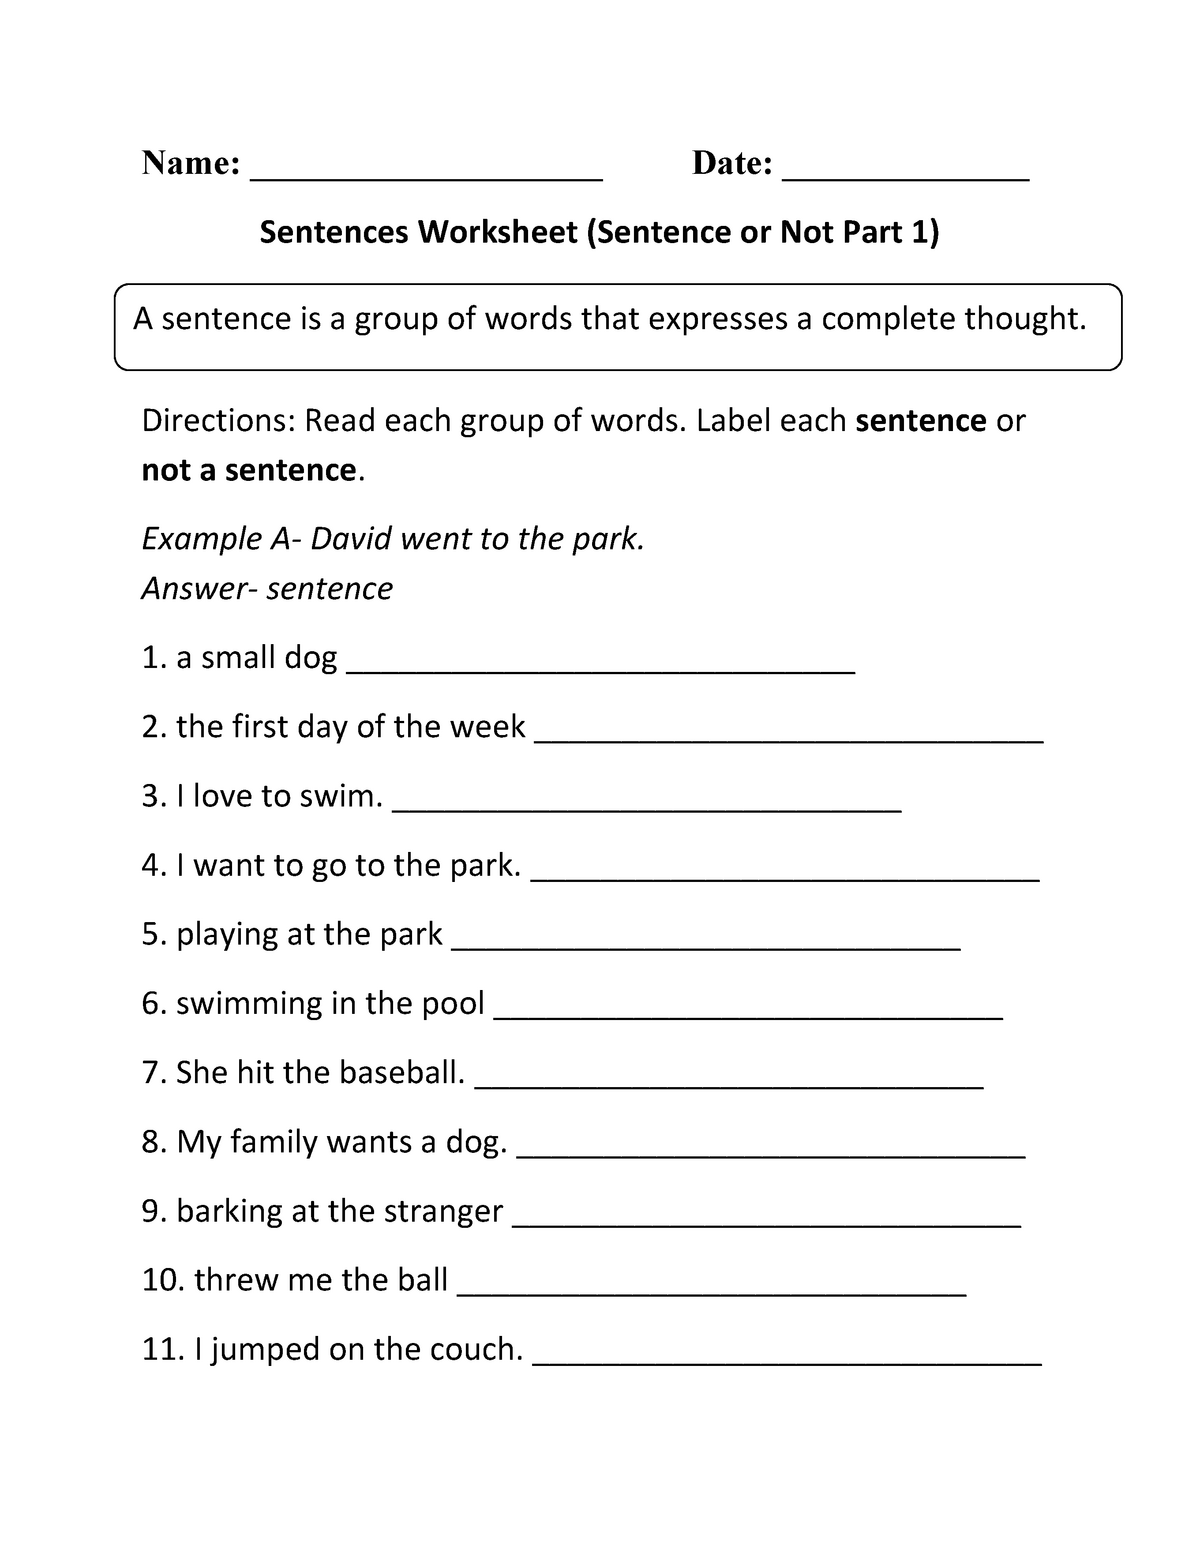 sentence-worksheet-for-grade-2-name-date-sentences